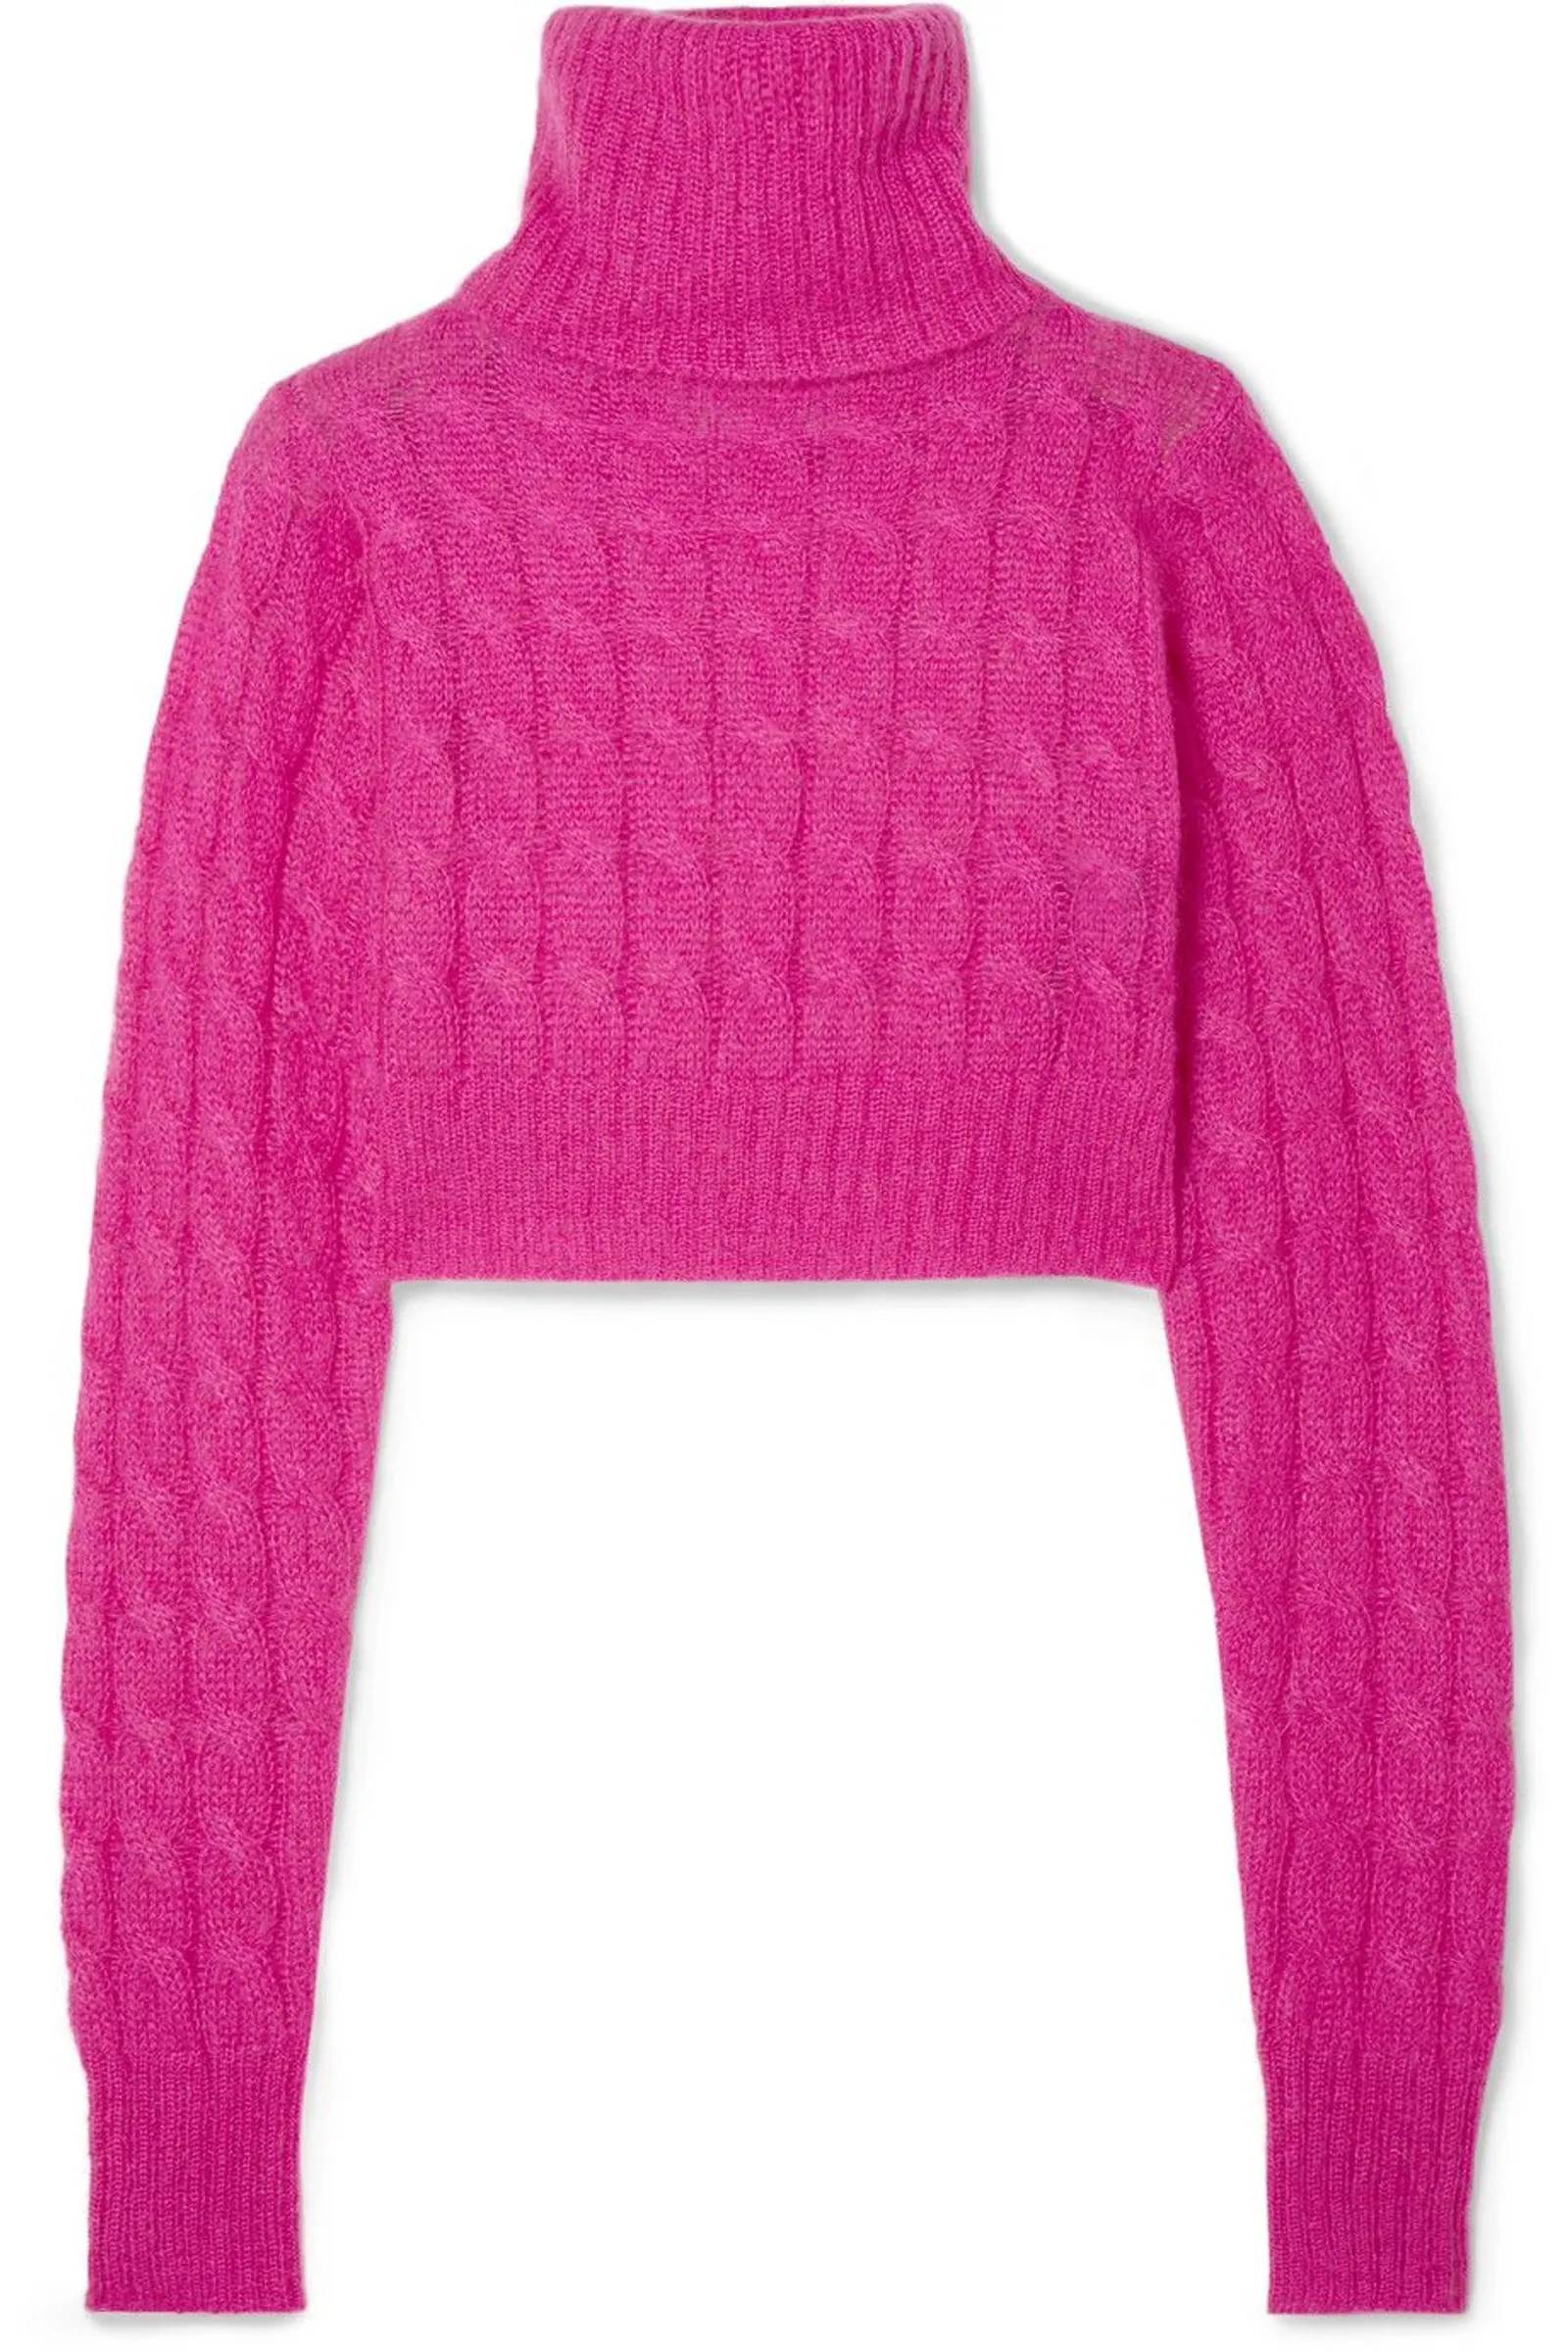 Sweater Warna Vibrant untuk OOTD yang Lebih Statement